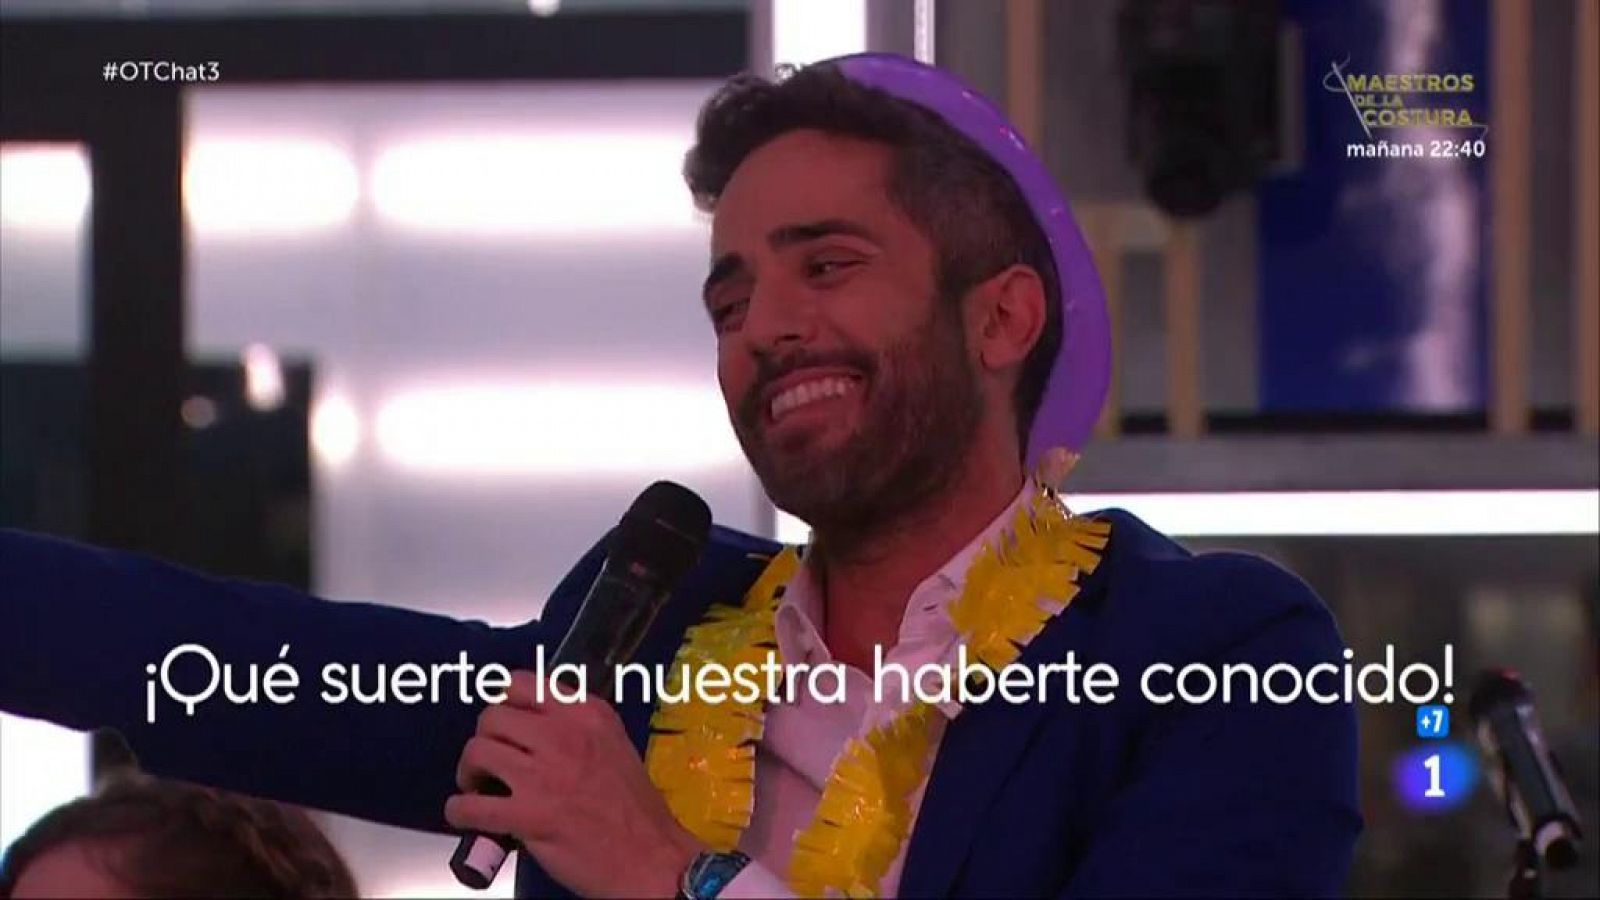 Roberto Leal canta "Corazón partío" de Alejandro Sanz en El Chat 3